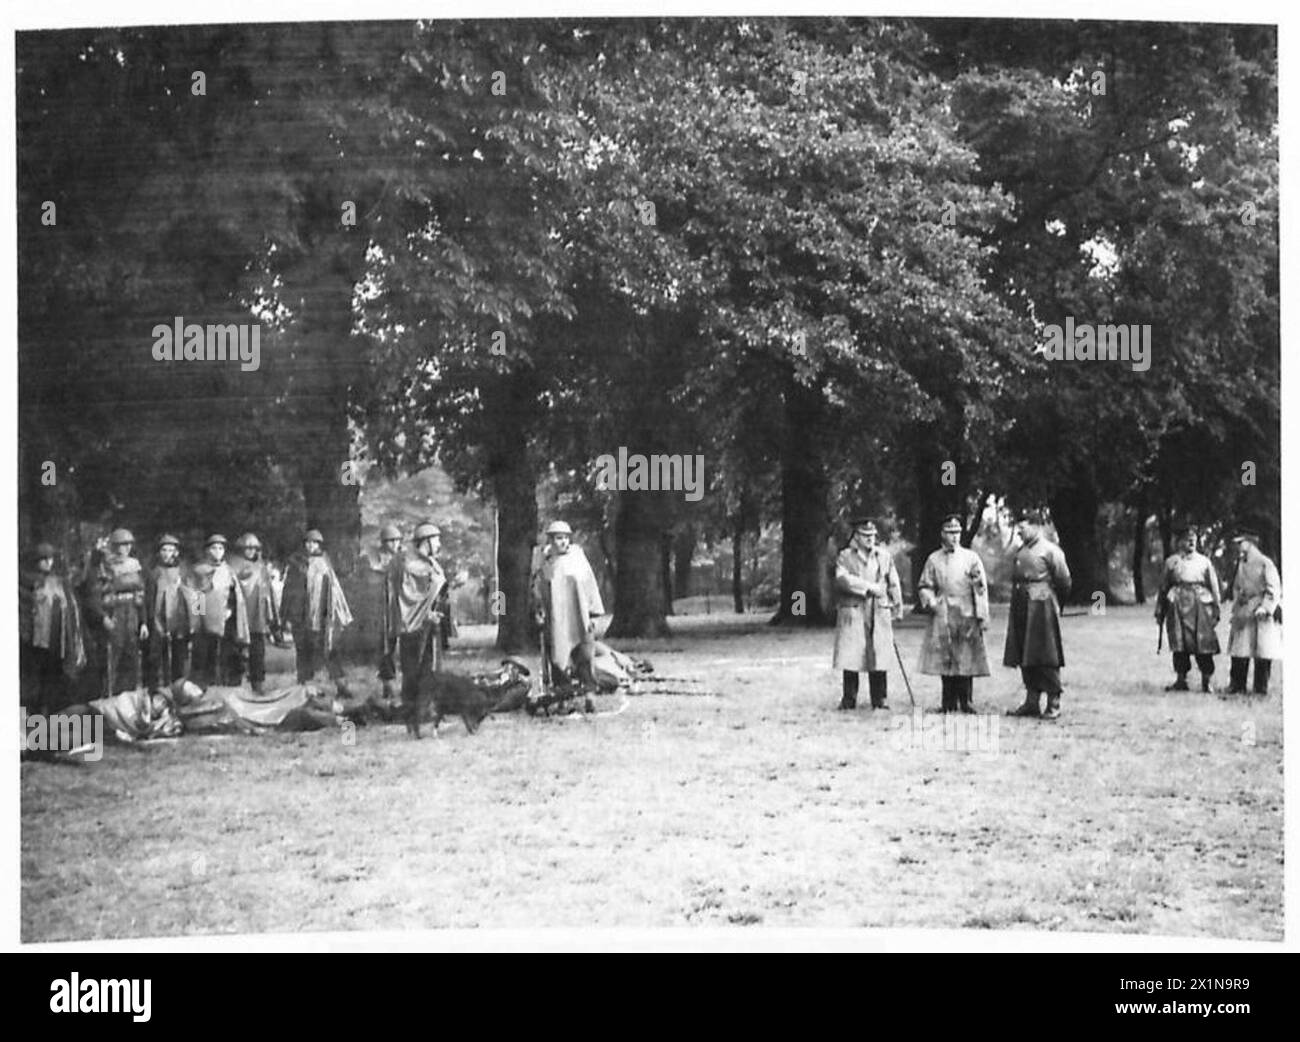 DER KÖNIG INSPIZIERT VORSTÄDTE VON LONDON - seine Majestät beobachtet Männer des 1. Bataillons der Scots Guards, die in einem South London Park in Norwood, British Army, trainiert werden Stockfoto